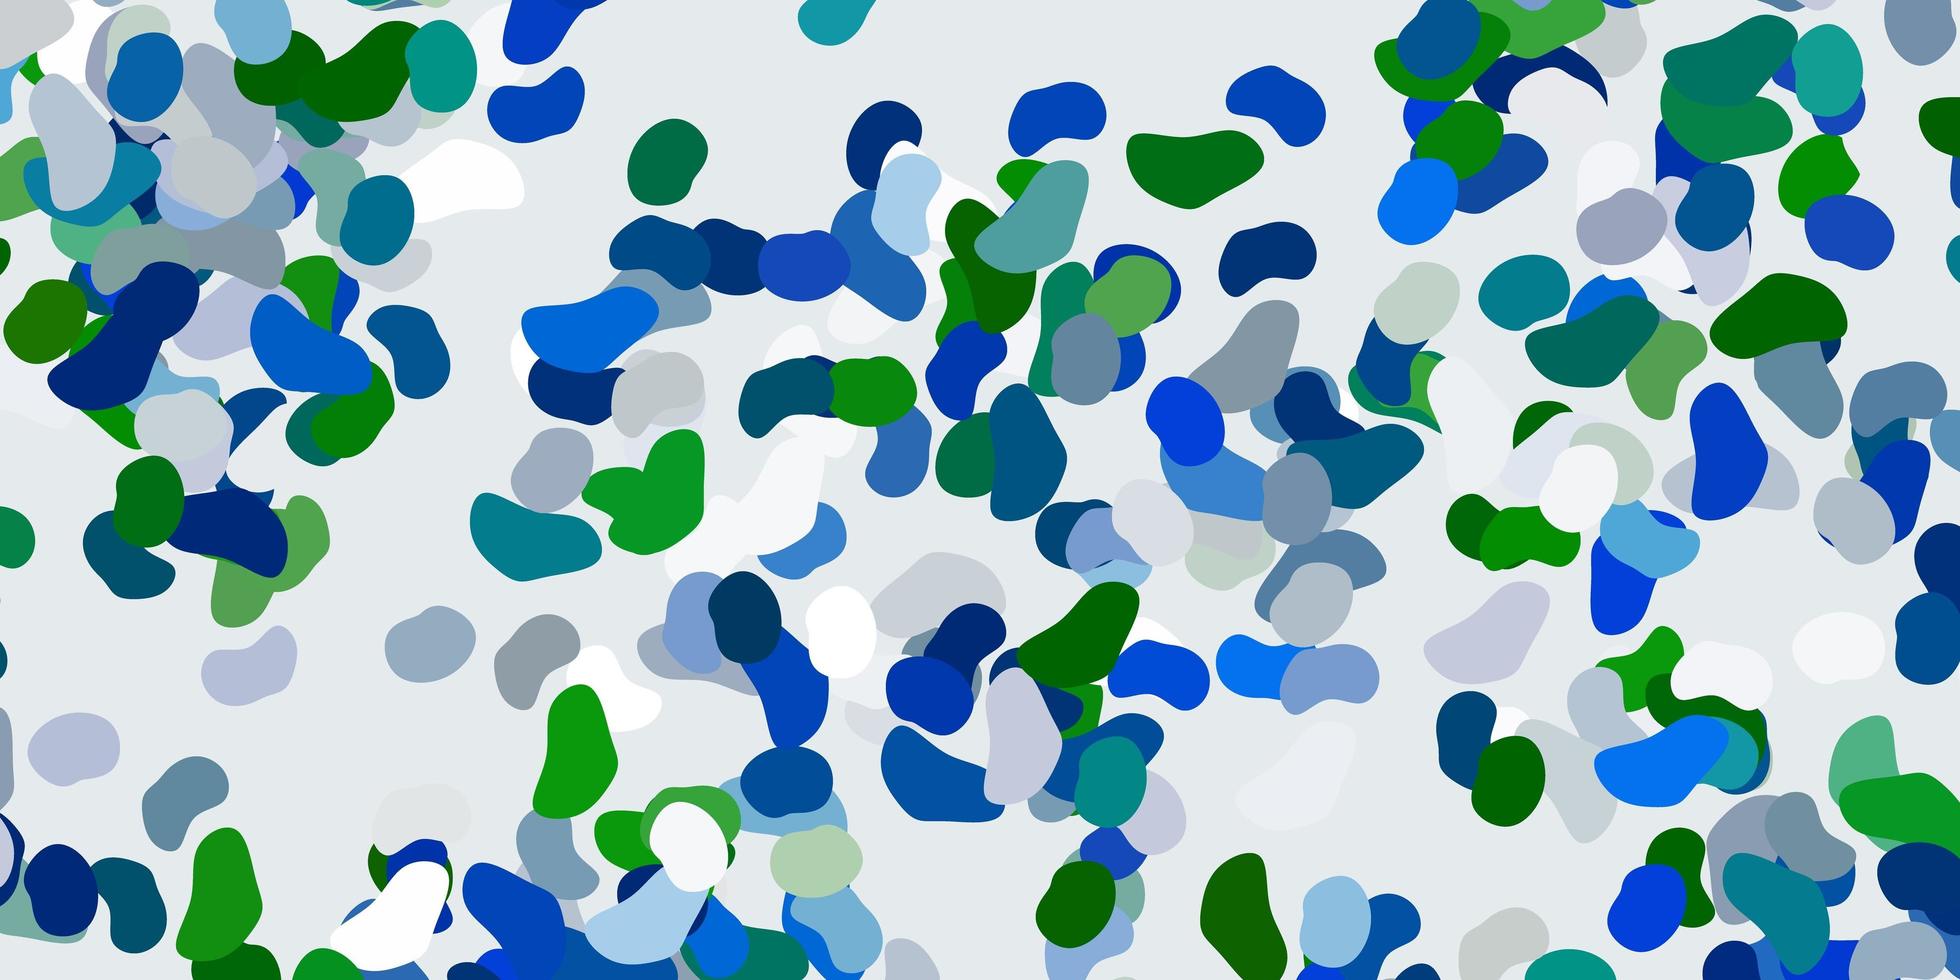 fundo vector azul e verde claro com formas aleatórias.